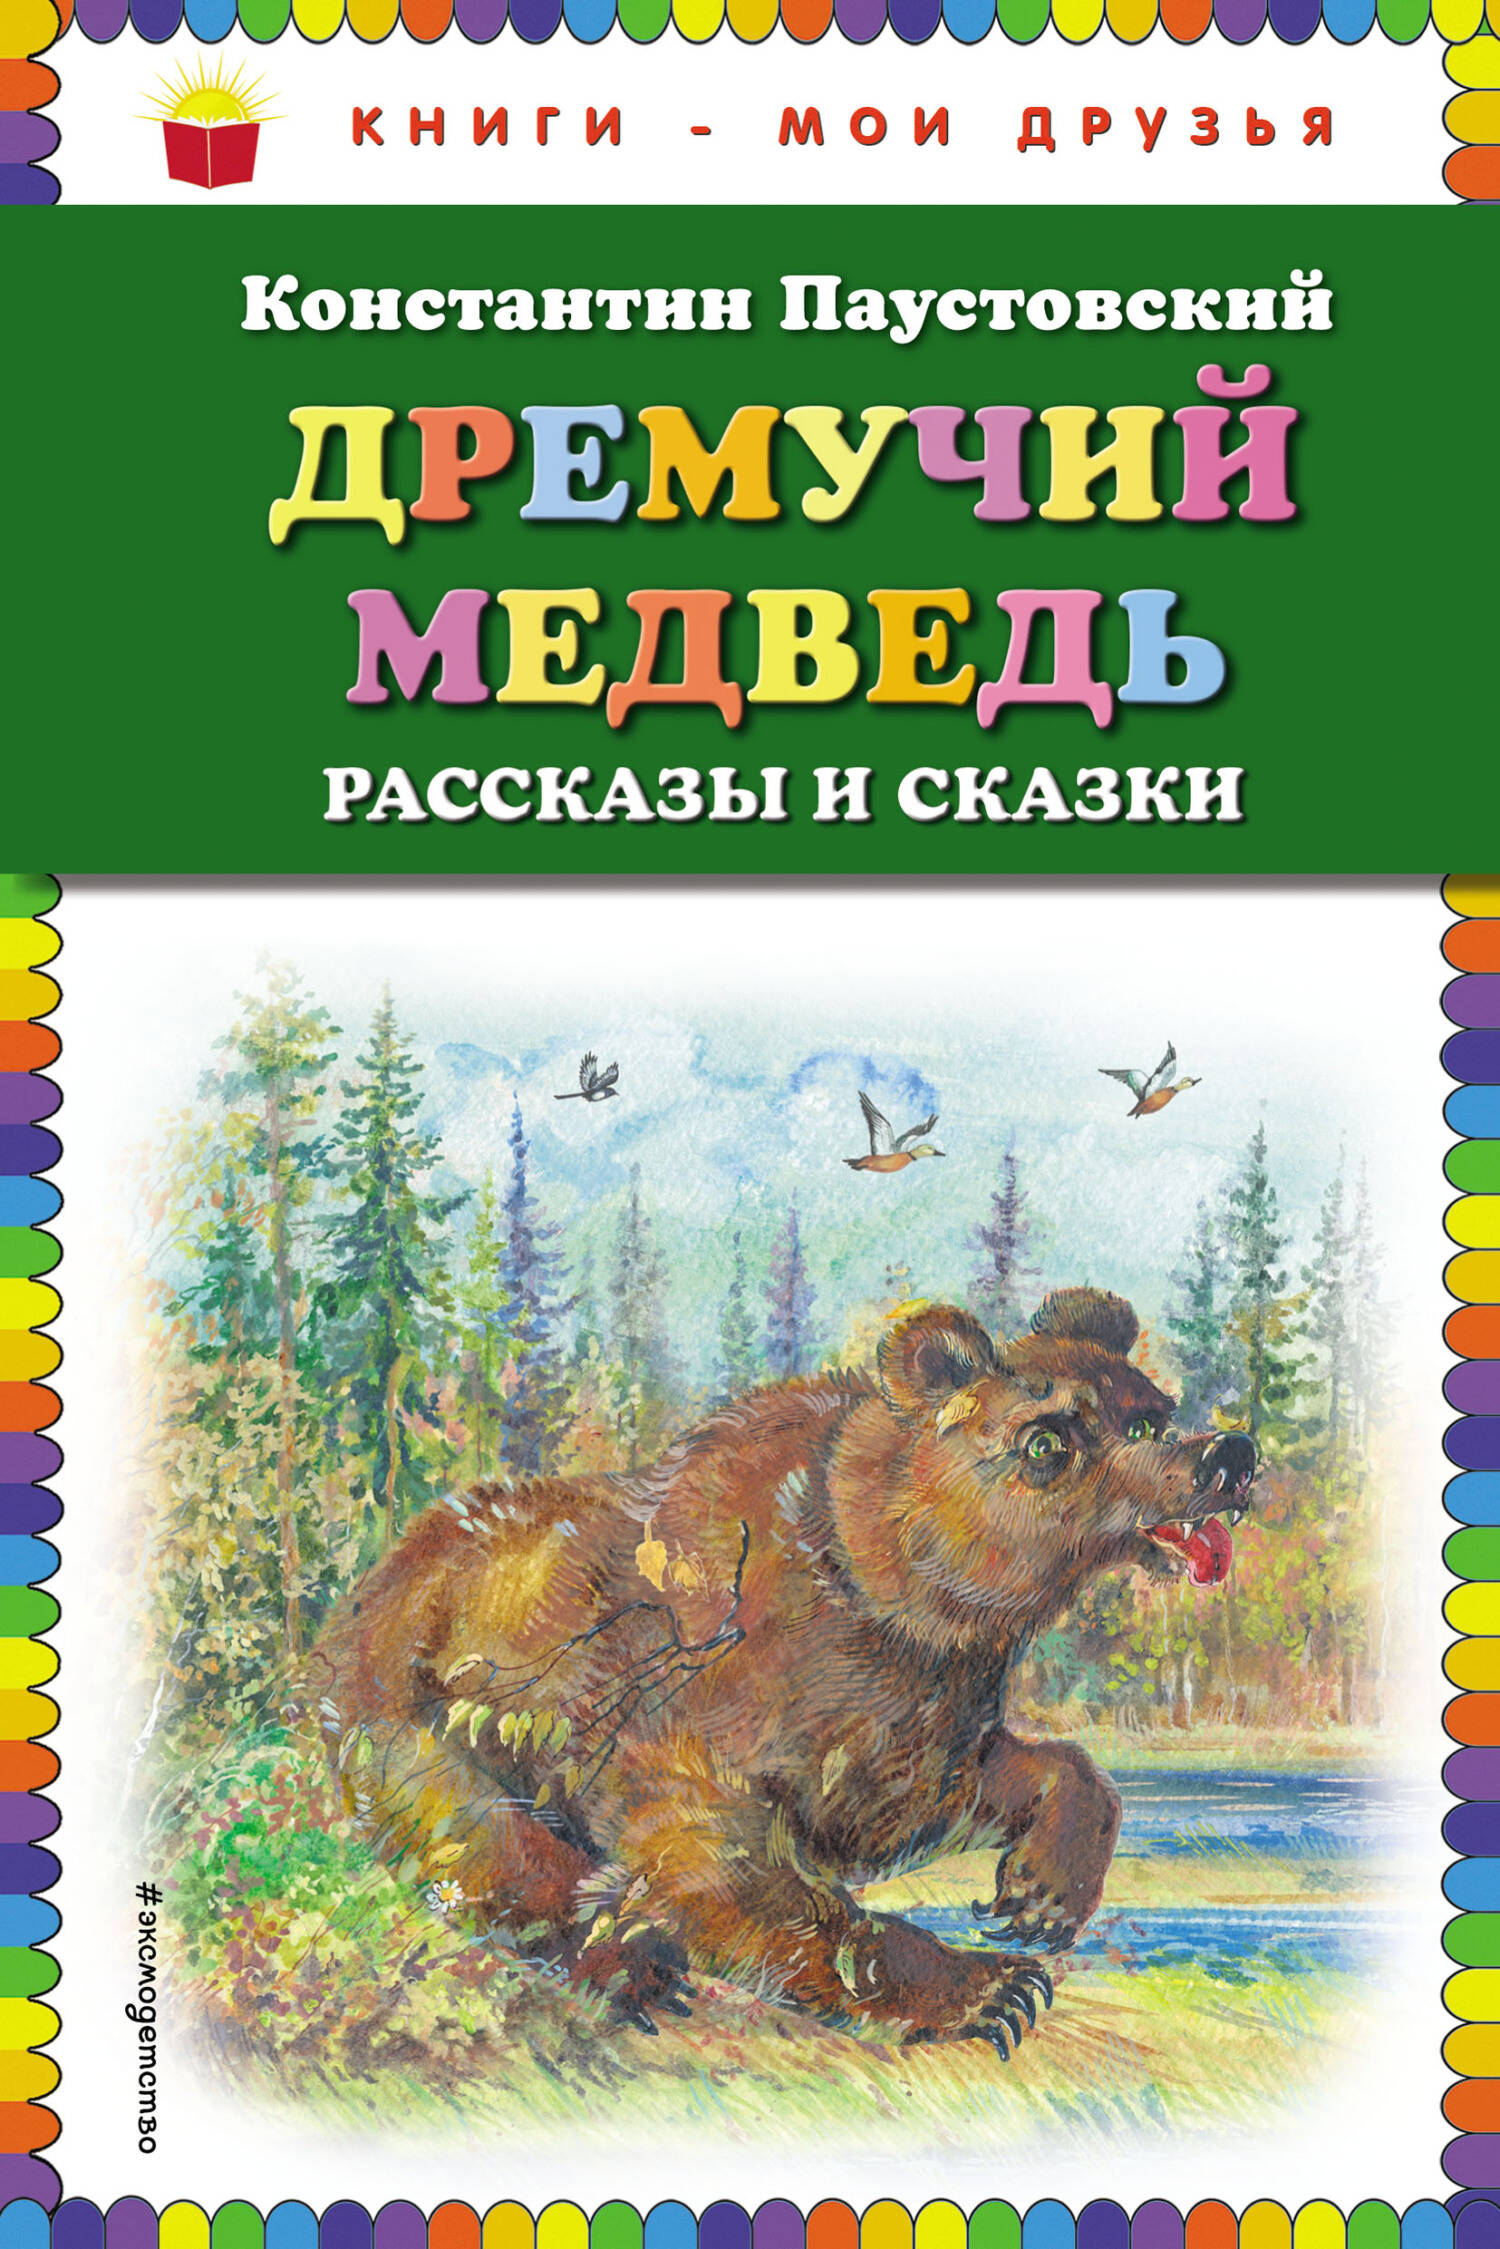 Дремучий медведь: рассказы и сказки